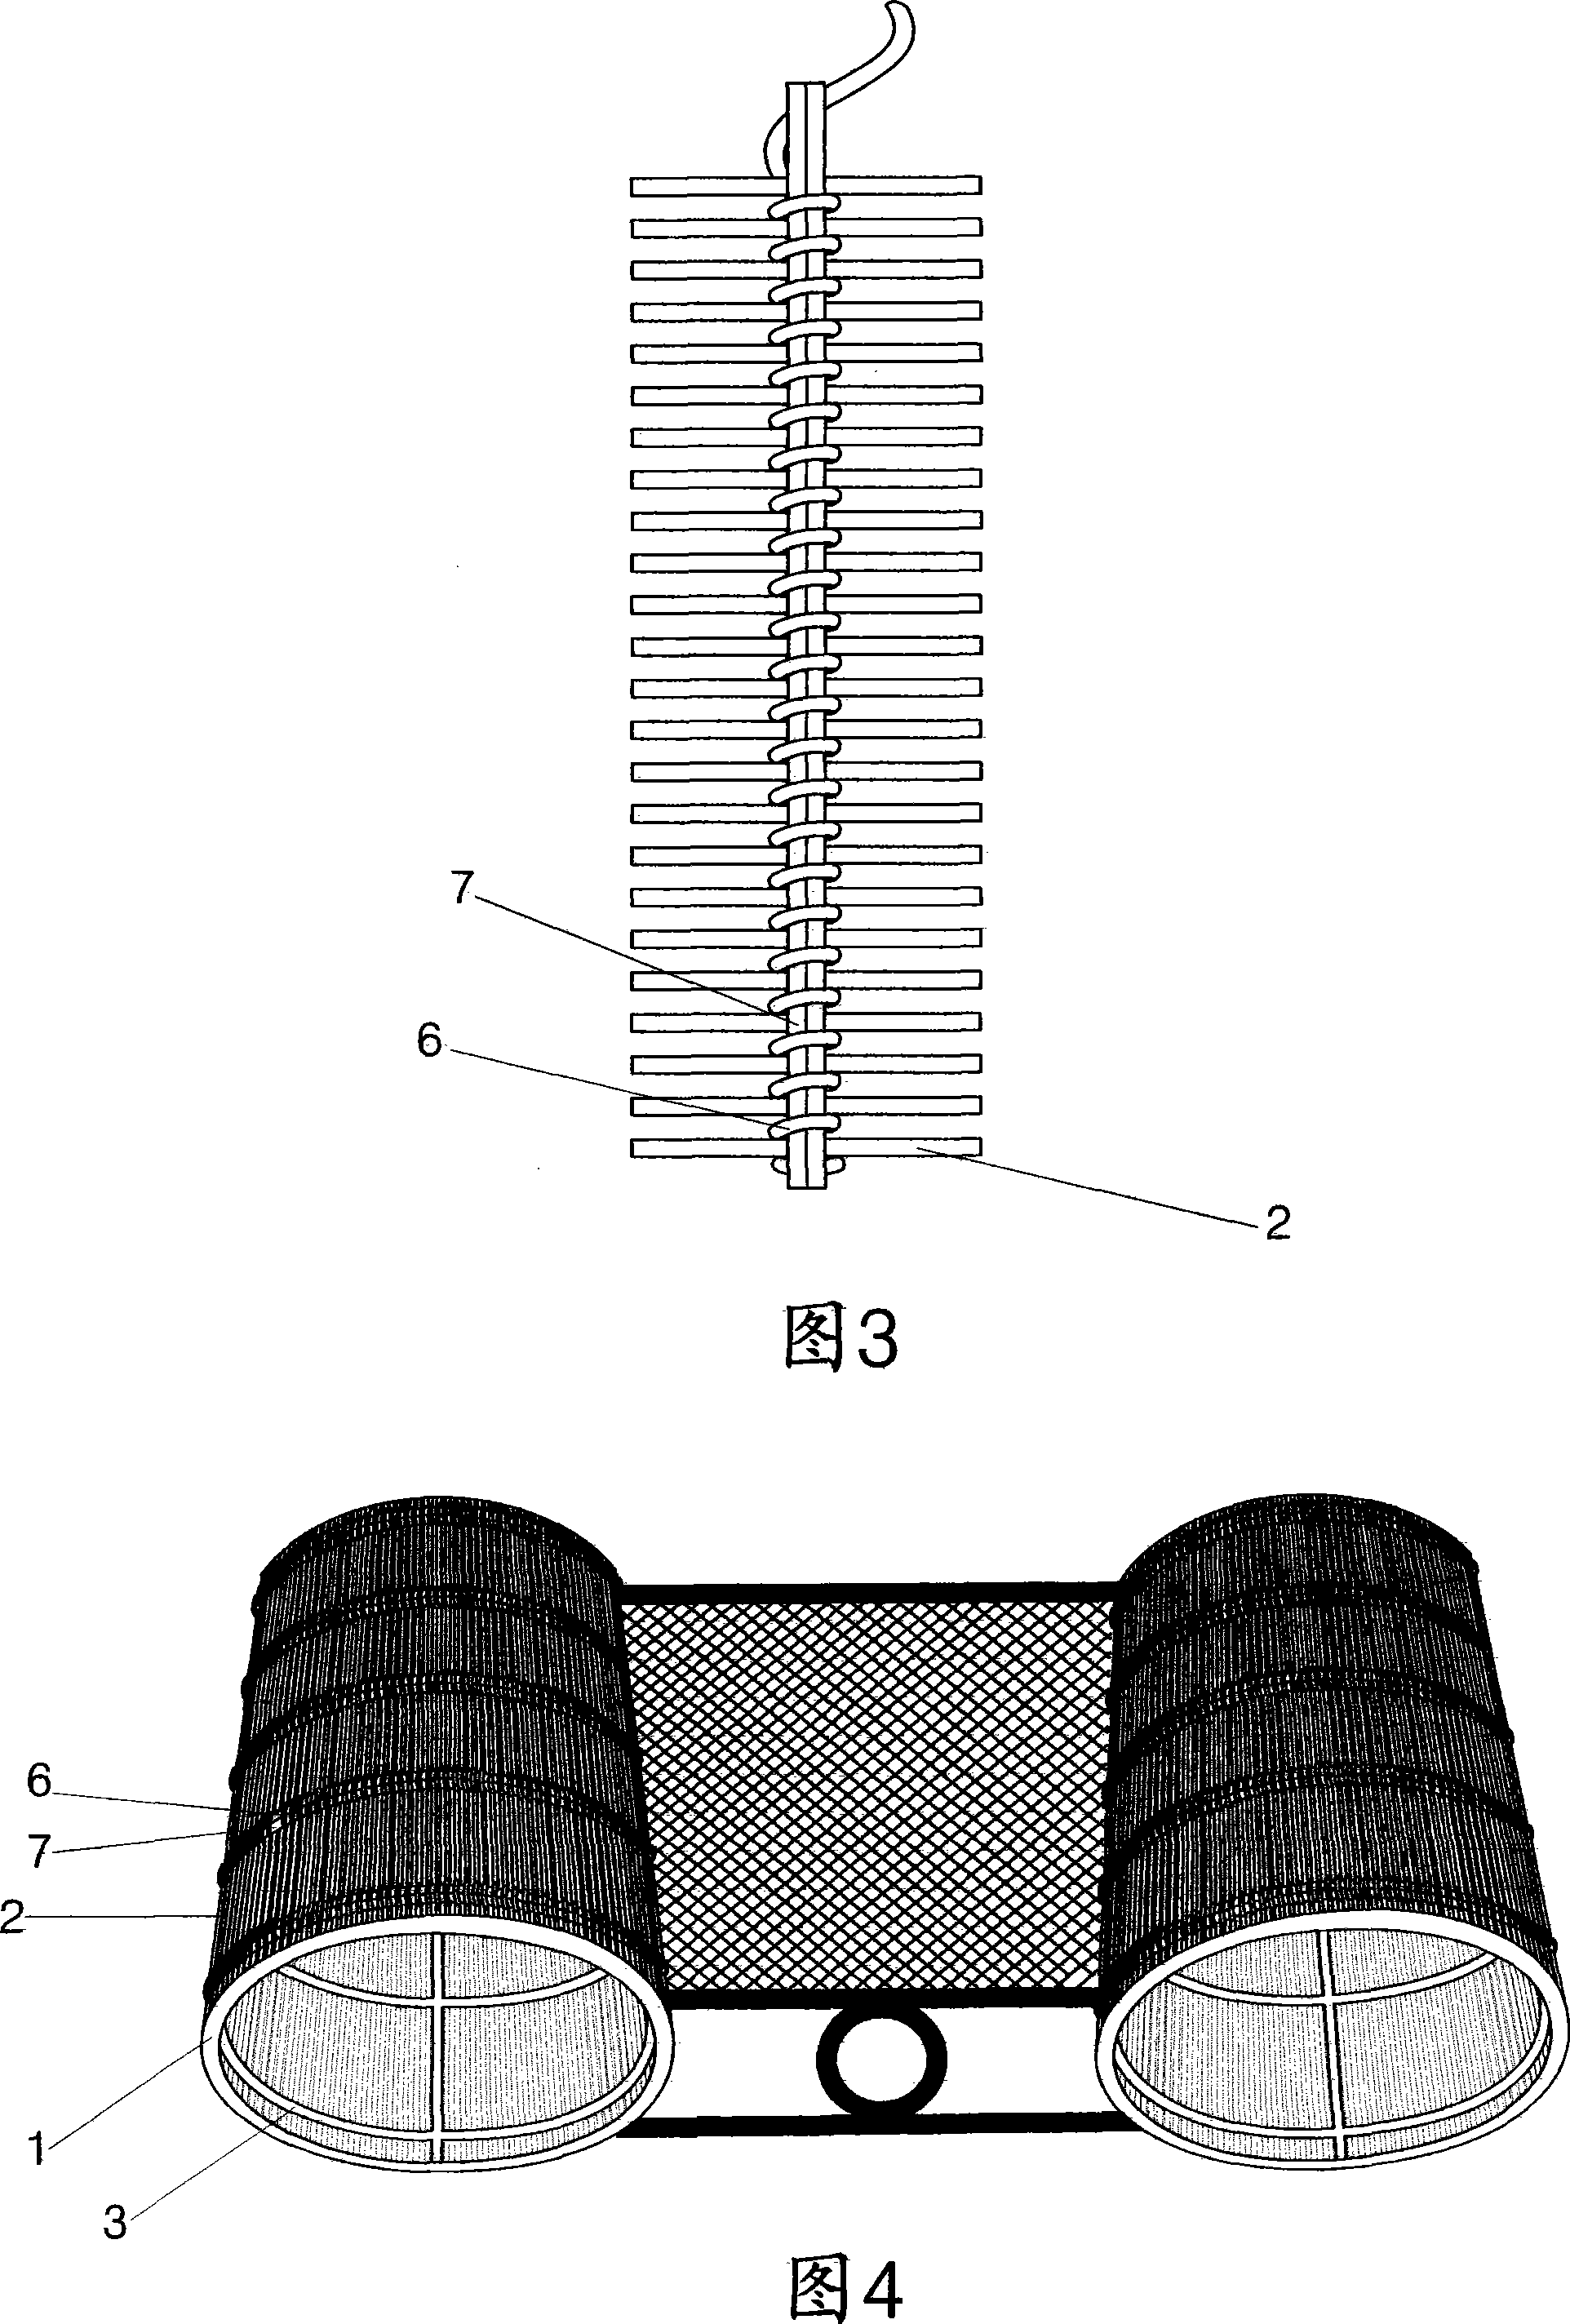 Method for knitting craftsman furniture